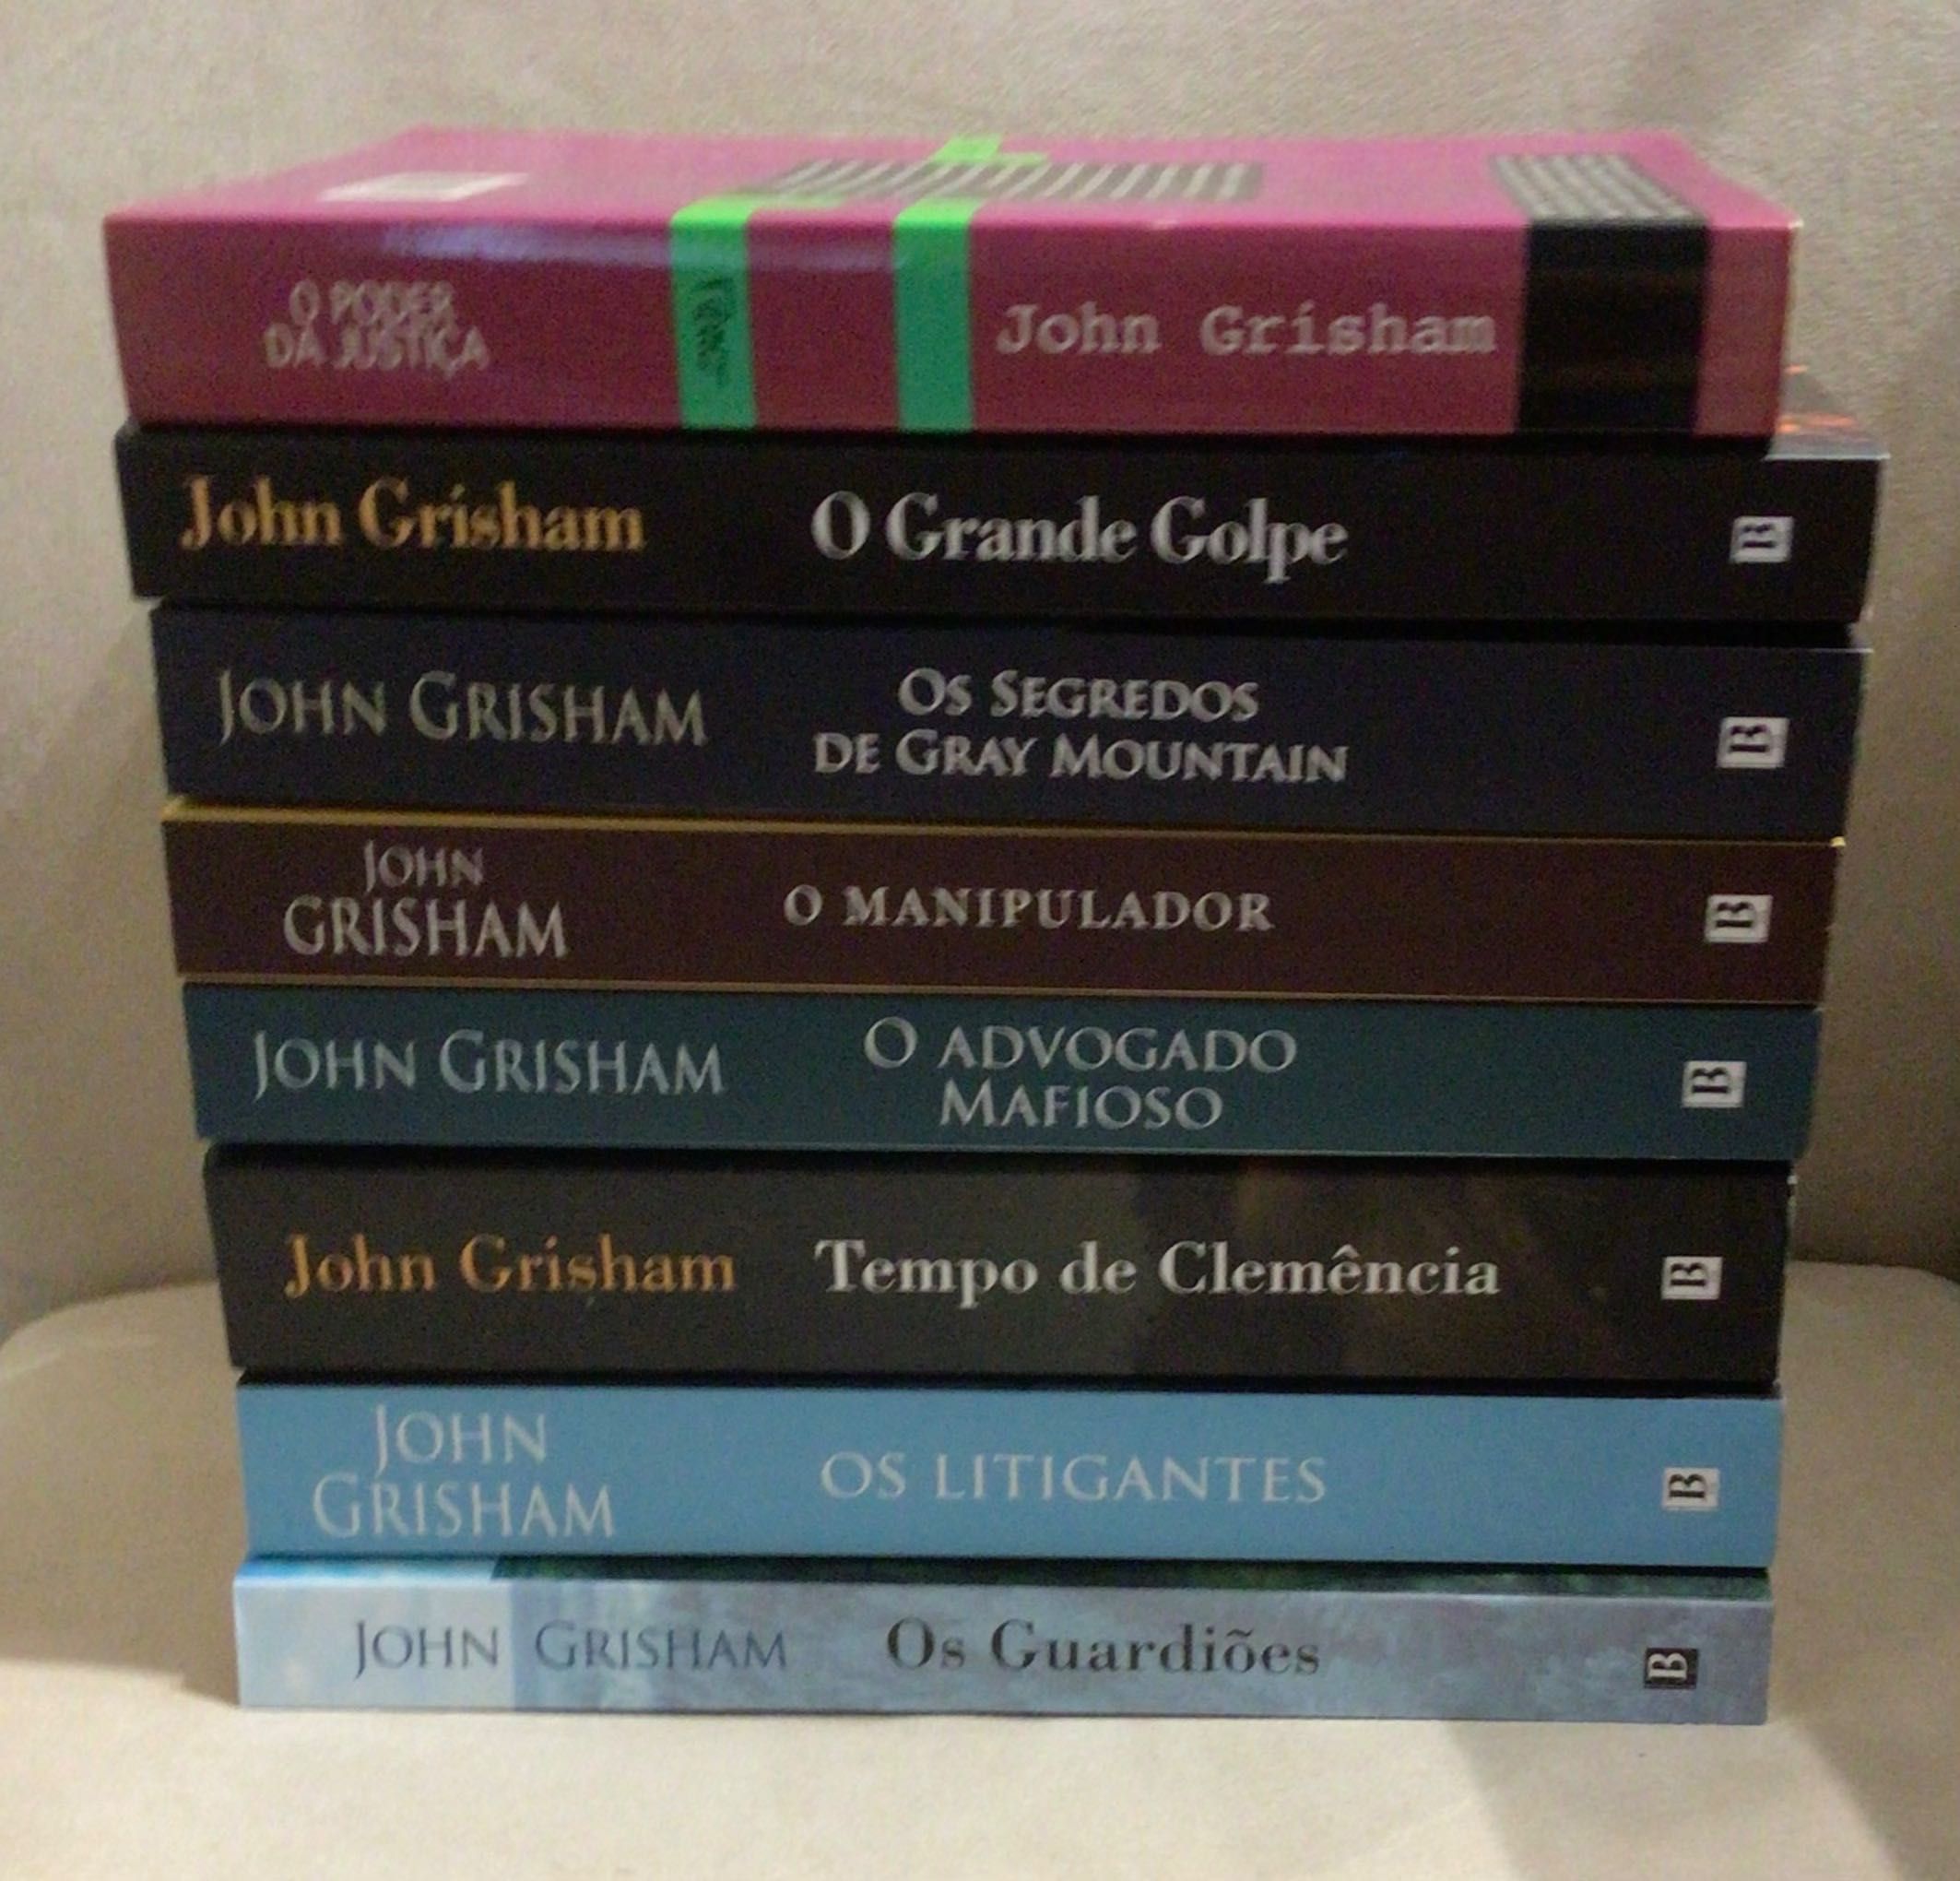 Livros John Grisham, portes grátis